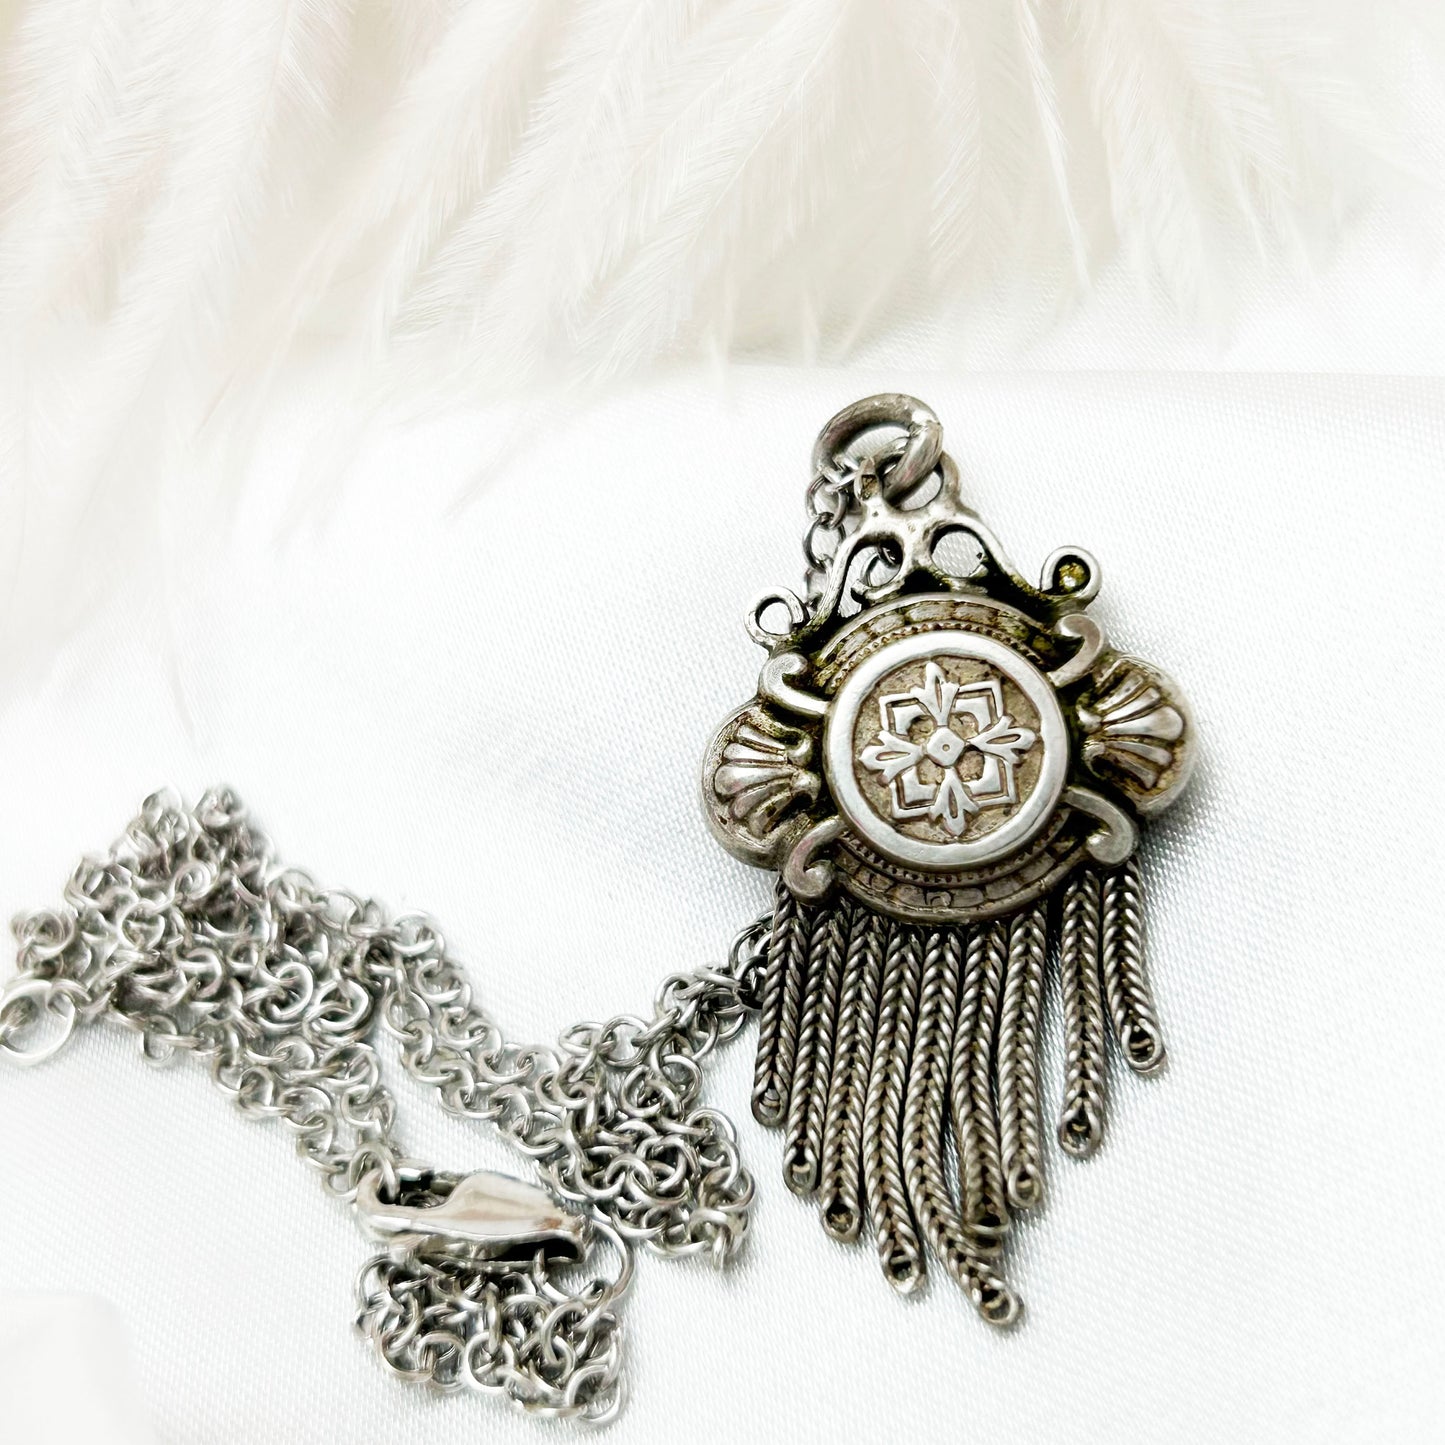 Vintage Sterling Silver Tassel Necklace